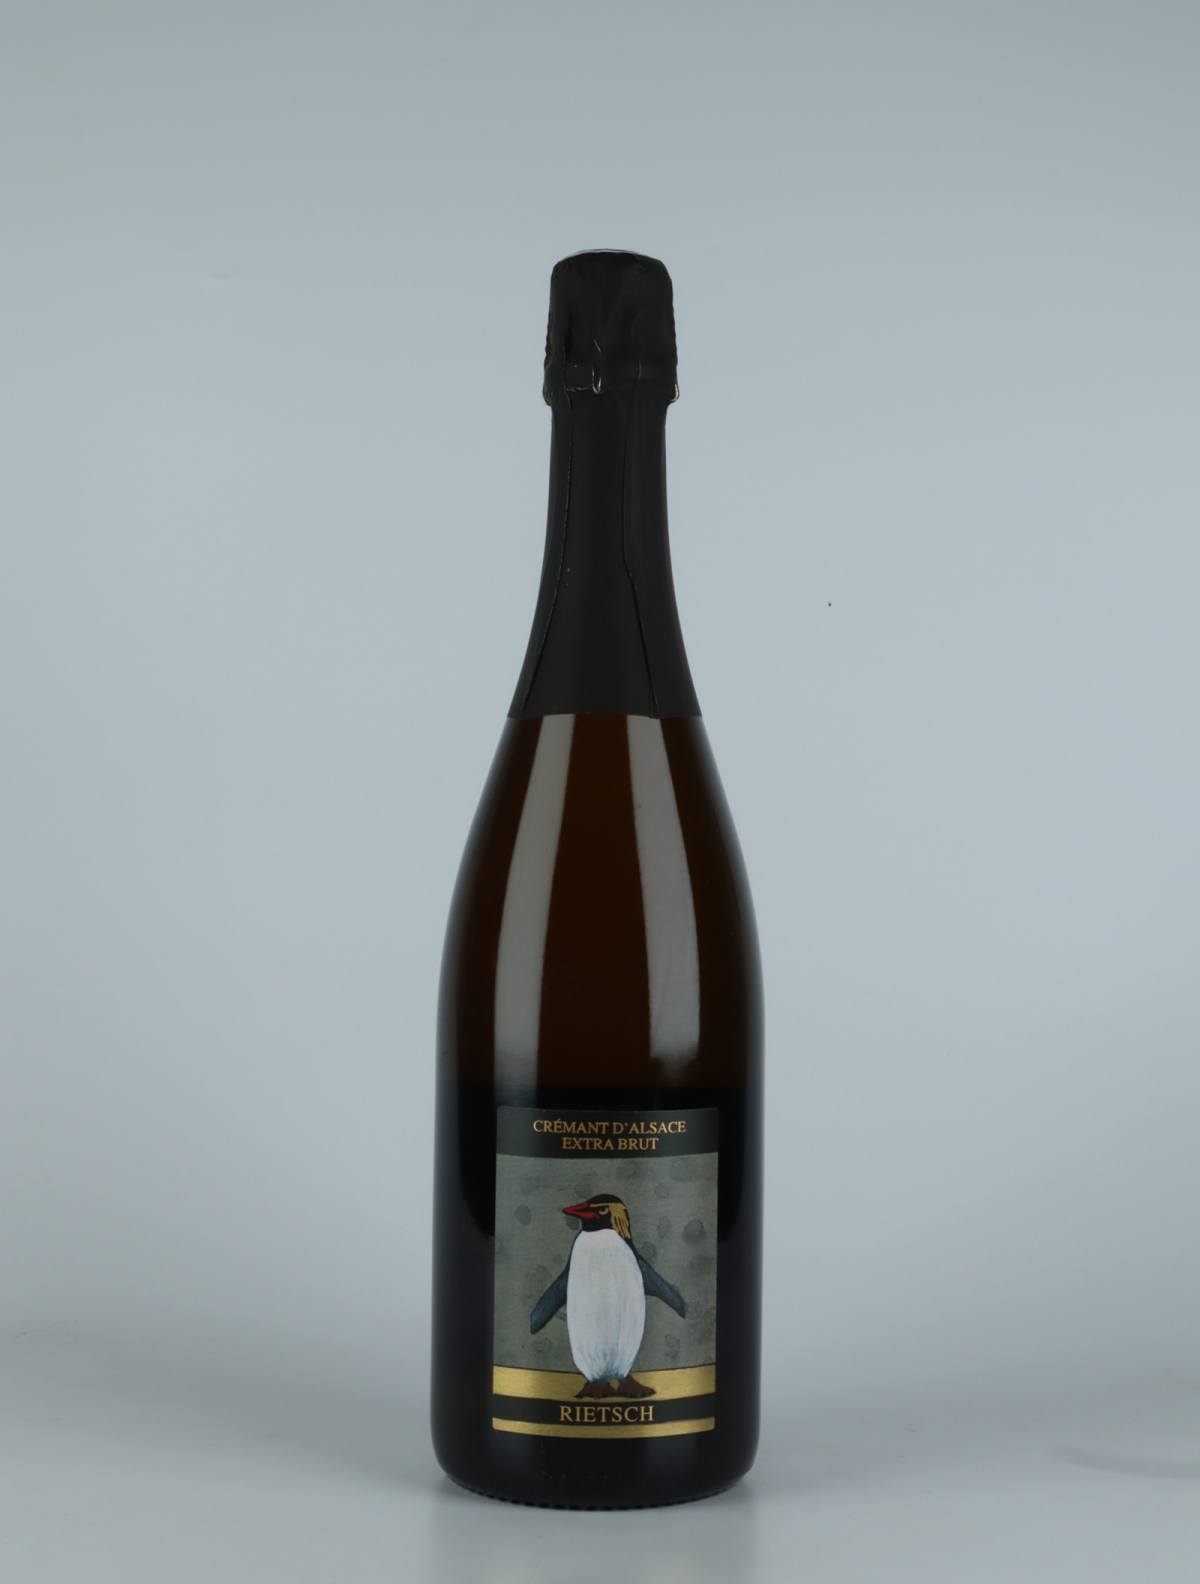 En flaske N.V. Cremant - Extra Brut (18/19) Mousserende fra Domaine Rietsch, Alsace i Frankrig